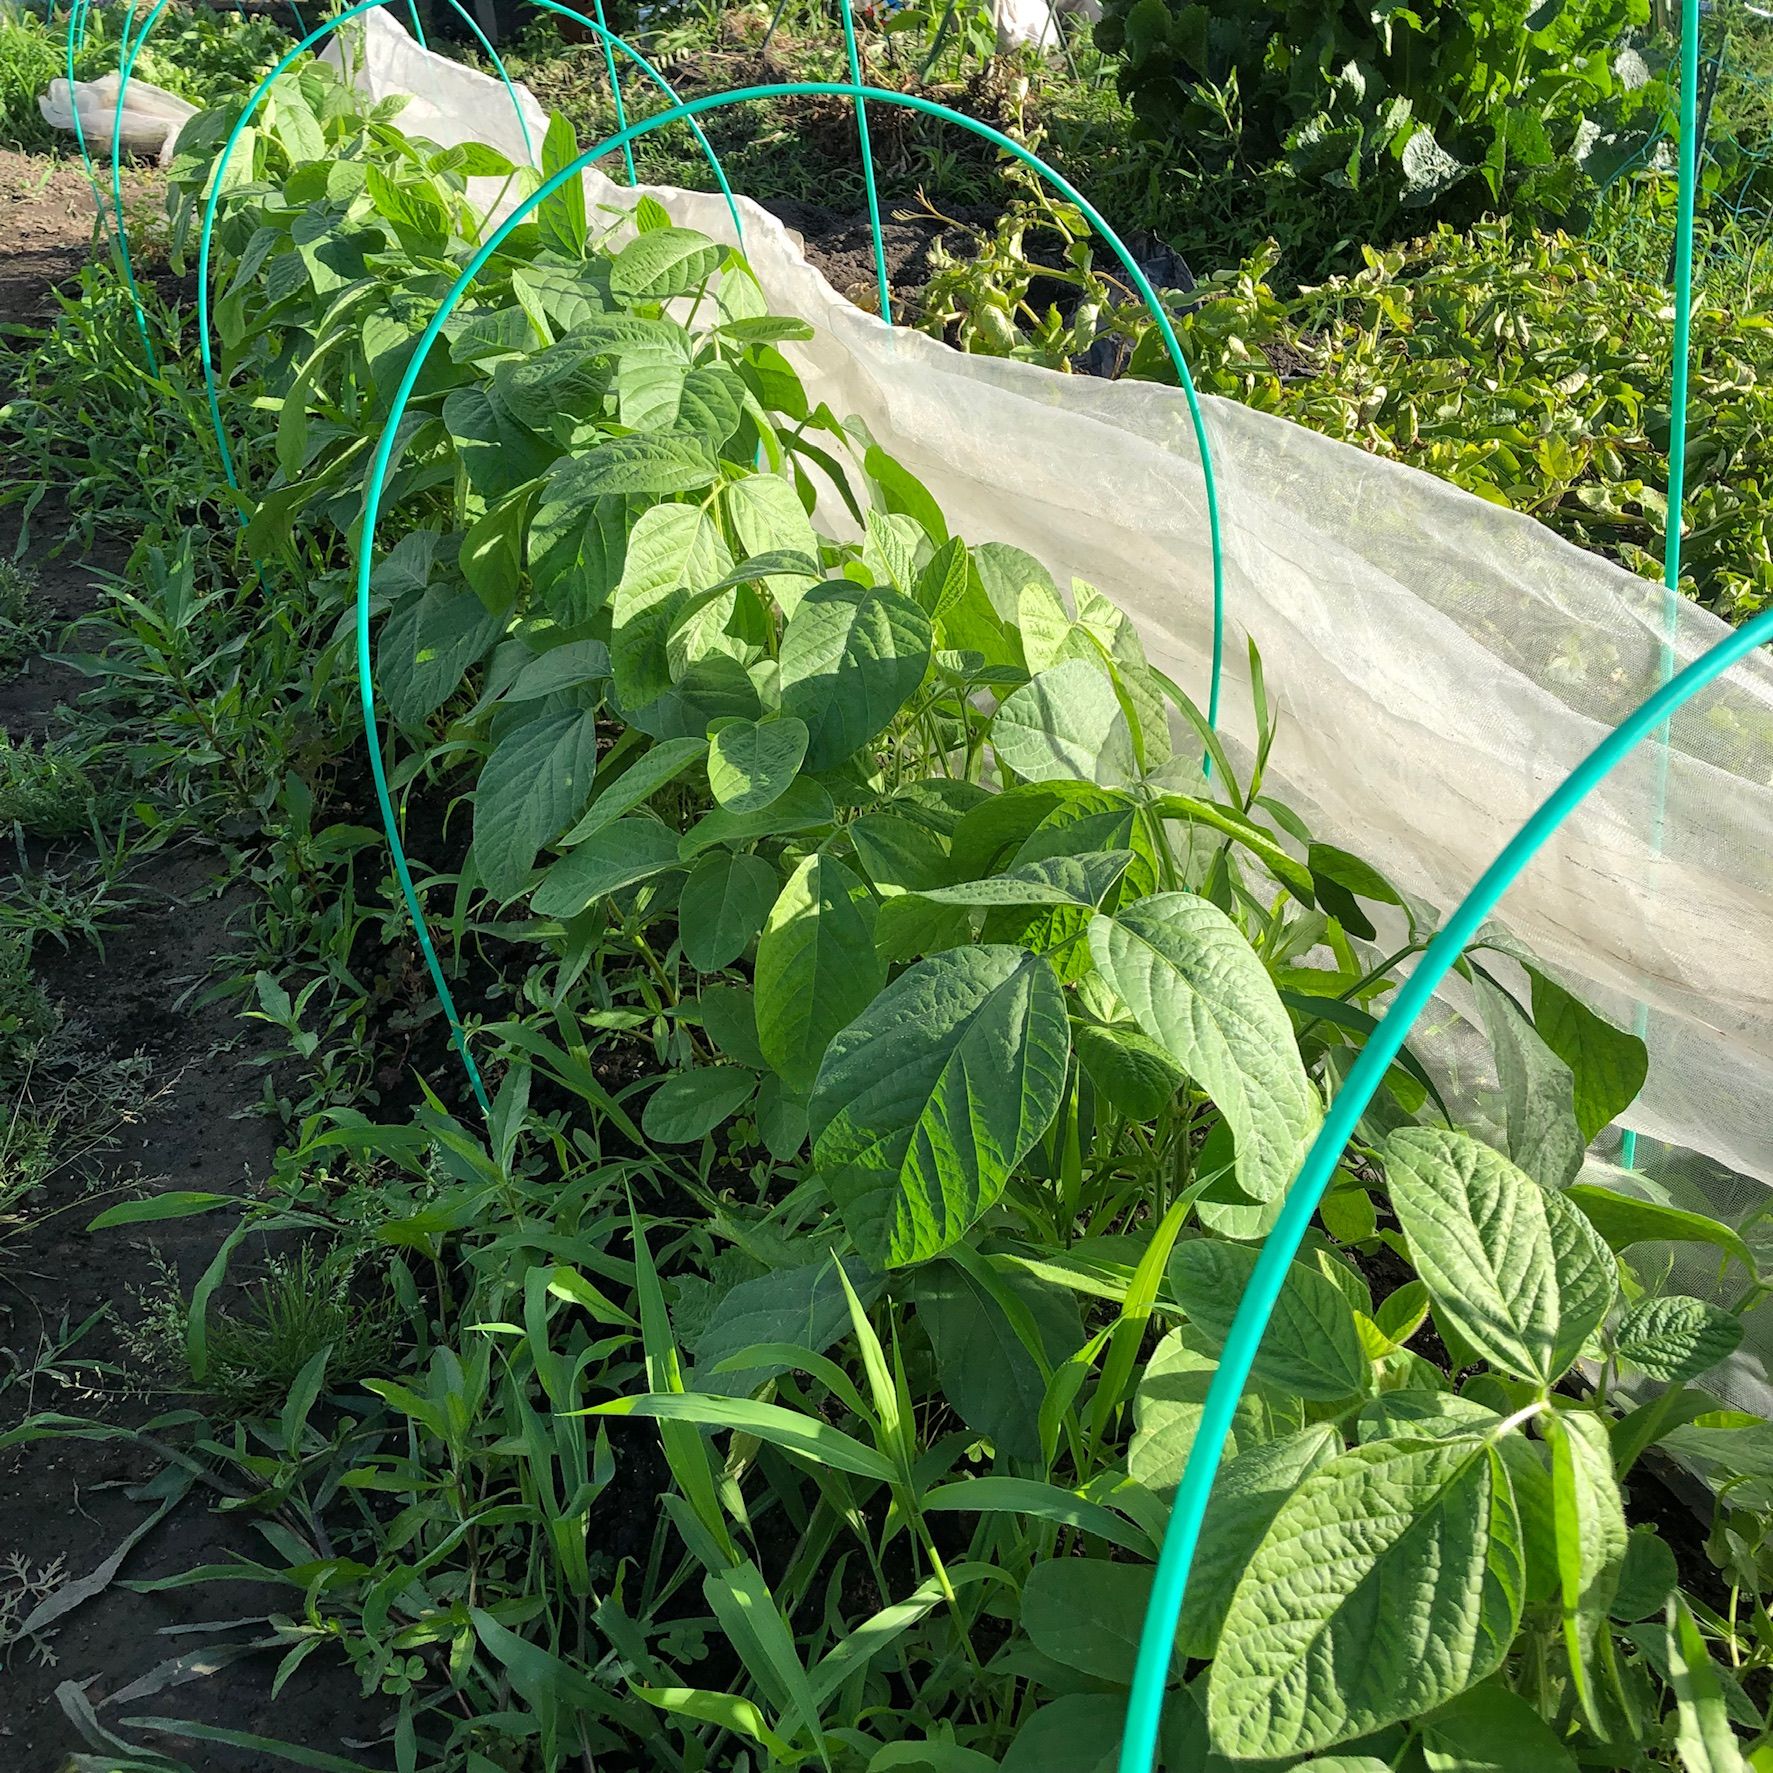 雑草退治の間に野菜のお世話も…枝豆の摘芯をしました ちょろ松の家庭菜園奮闘記 楽天ブログ